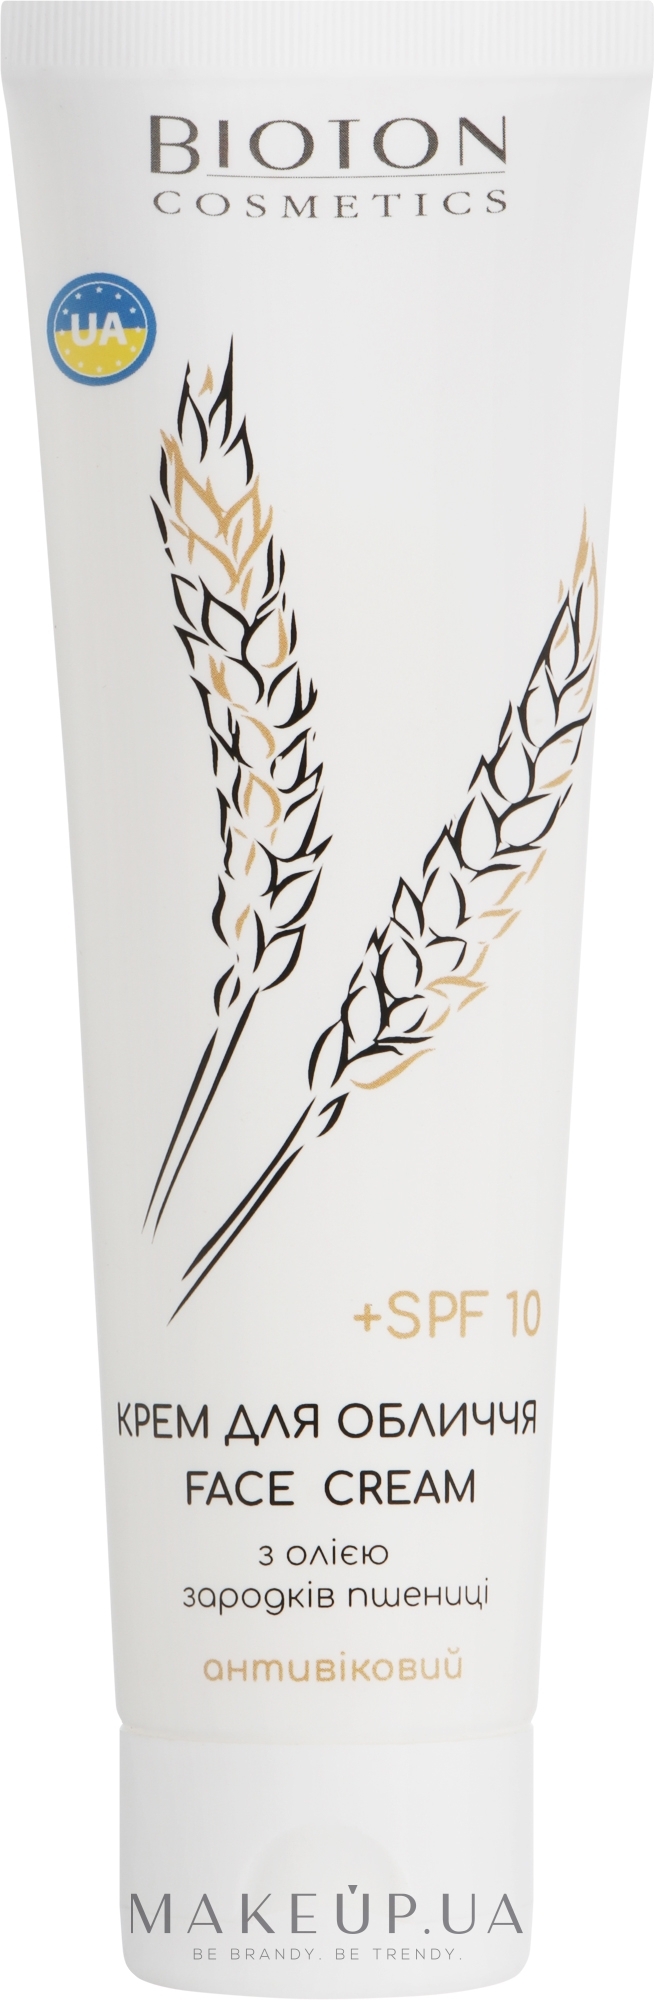 Крем для обличчя з екстрактом протеїнів із зародків пшениці - Bioton Cosmetics Face Cream SPF 10 — фото 100ml